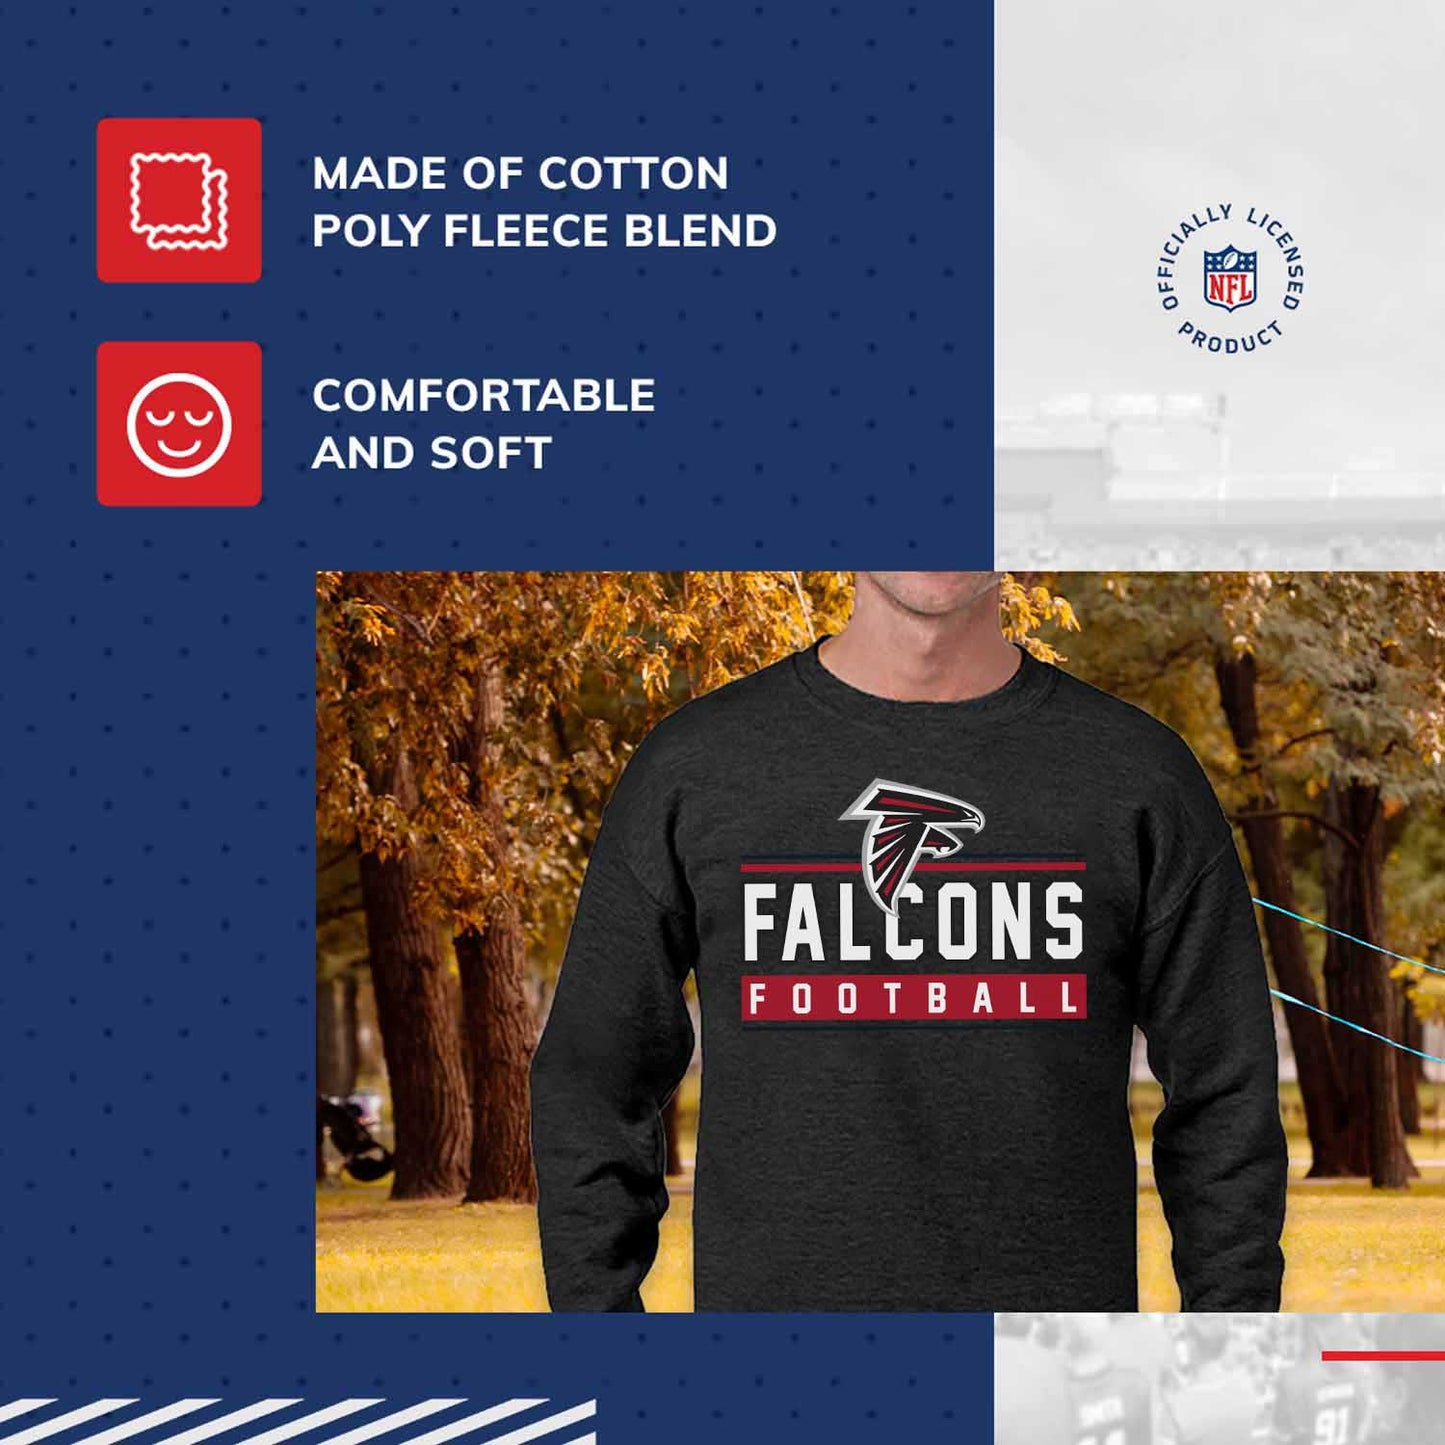 Atlanta Falcons NFL Adult True Fan Crewneck Sweatshirt - Charcoal